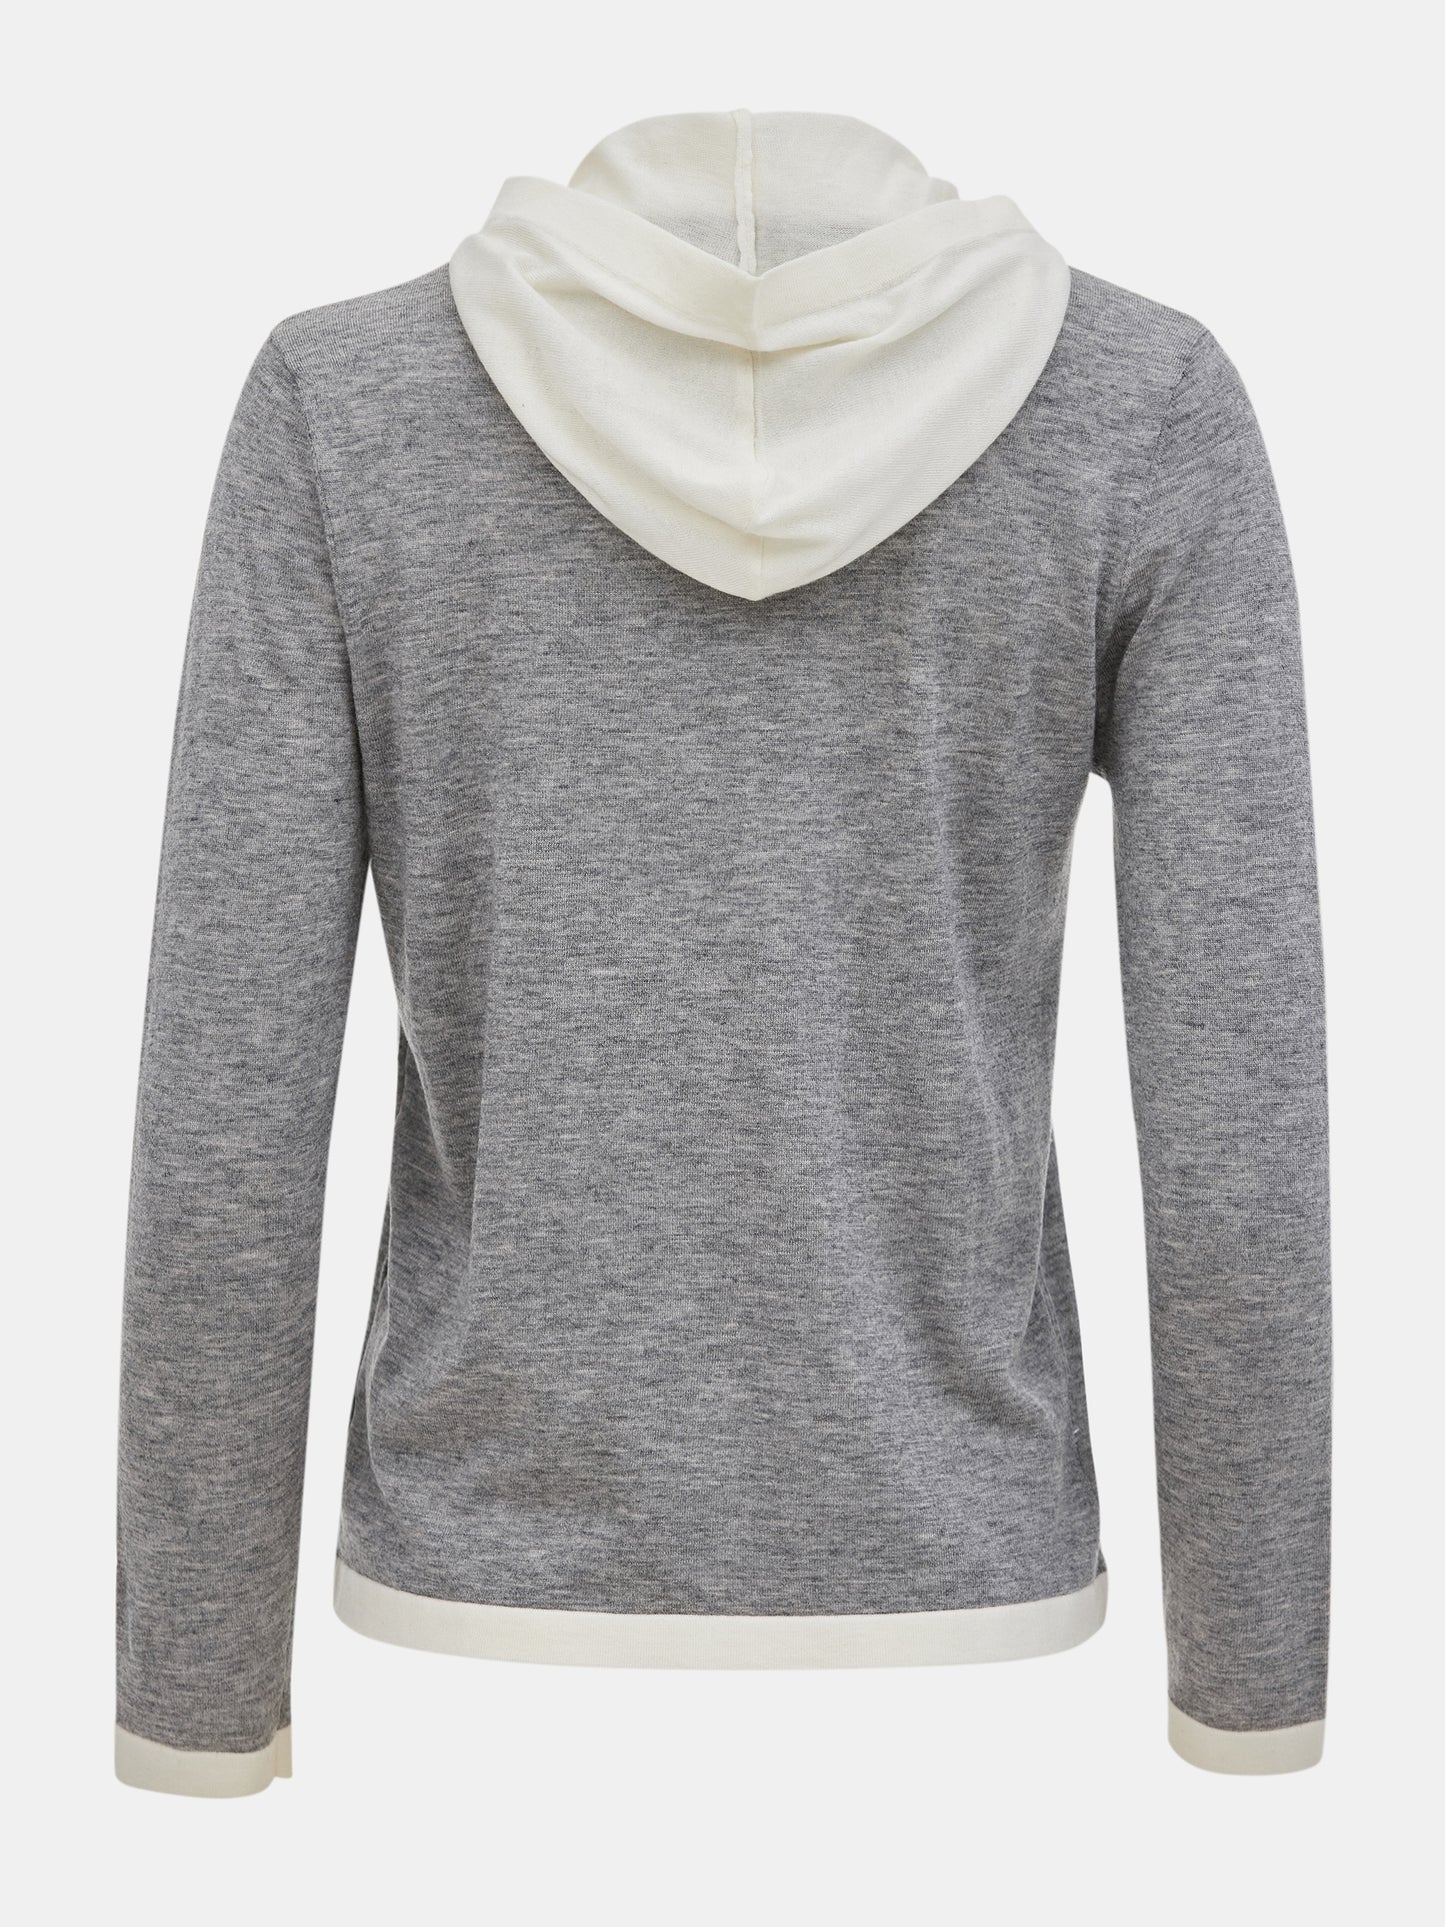 Layered Knit, Grey/Ivory